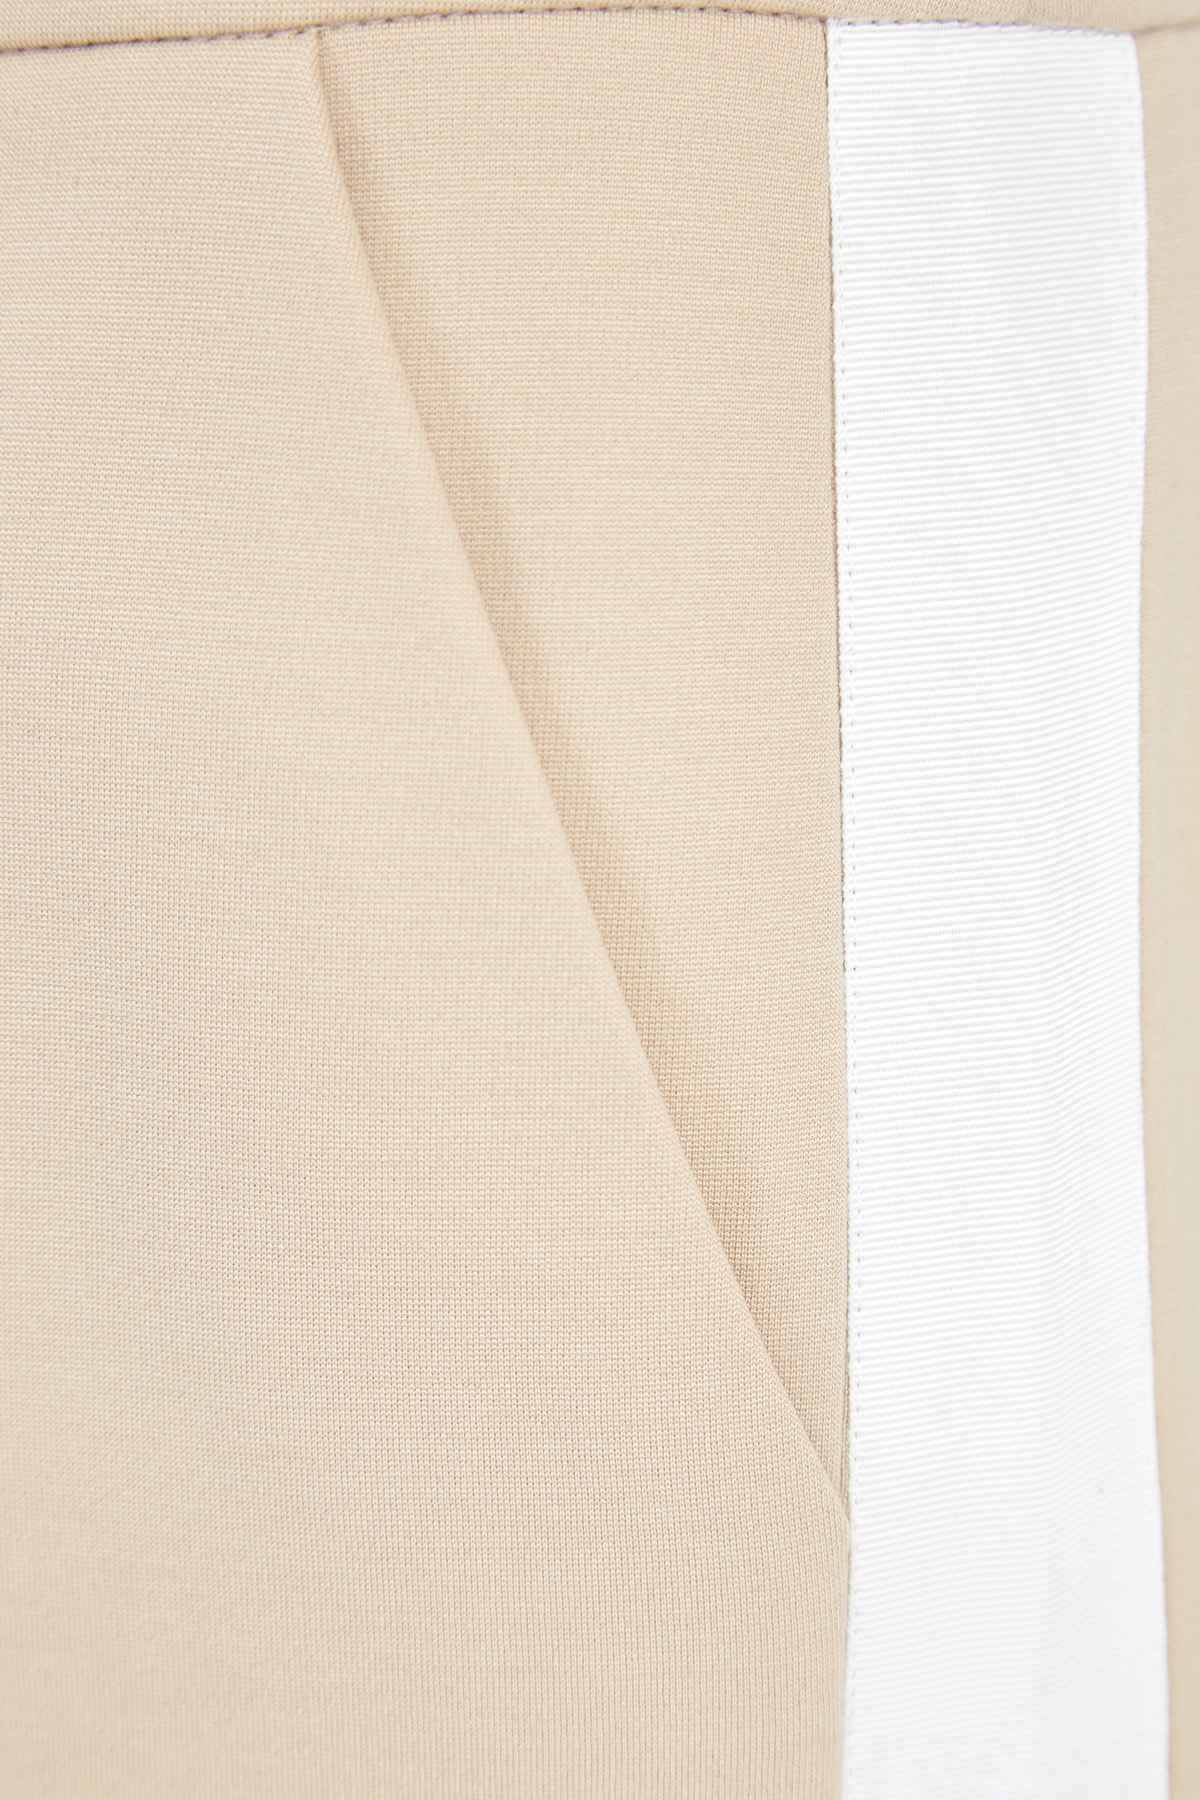 Брюки-клеш из ткани кремового цвета с широкими вставками-лампасами MAISON ULLENS, размер 36;40 - фото 6